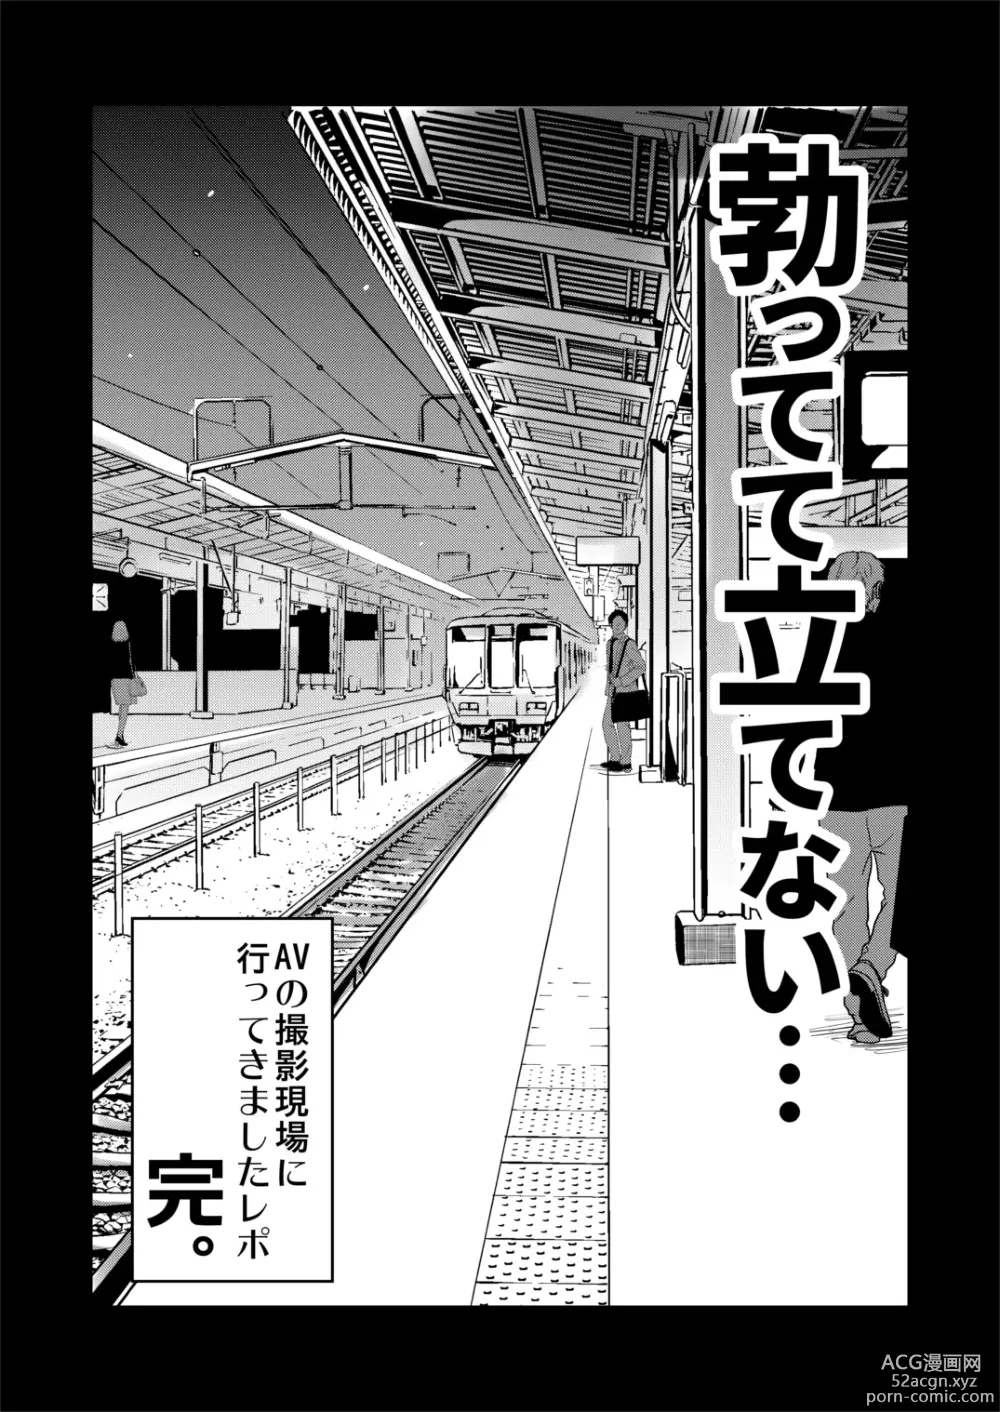 Page 27 of doujinshi Jibun no Kaita Manga ga Jissha AV ni!? Sekkaku nano de Satsuei Genba no Kengaku ni Ittekimashita.